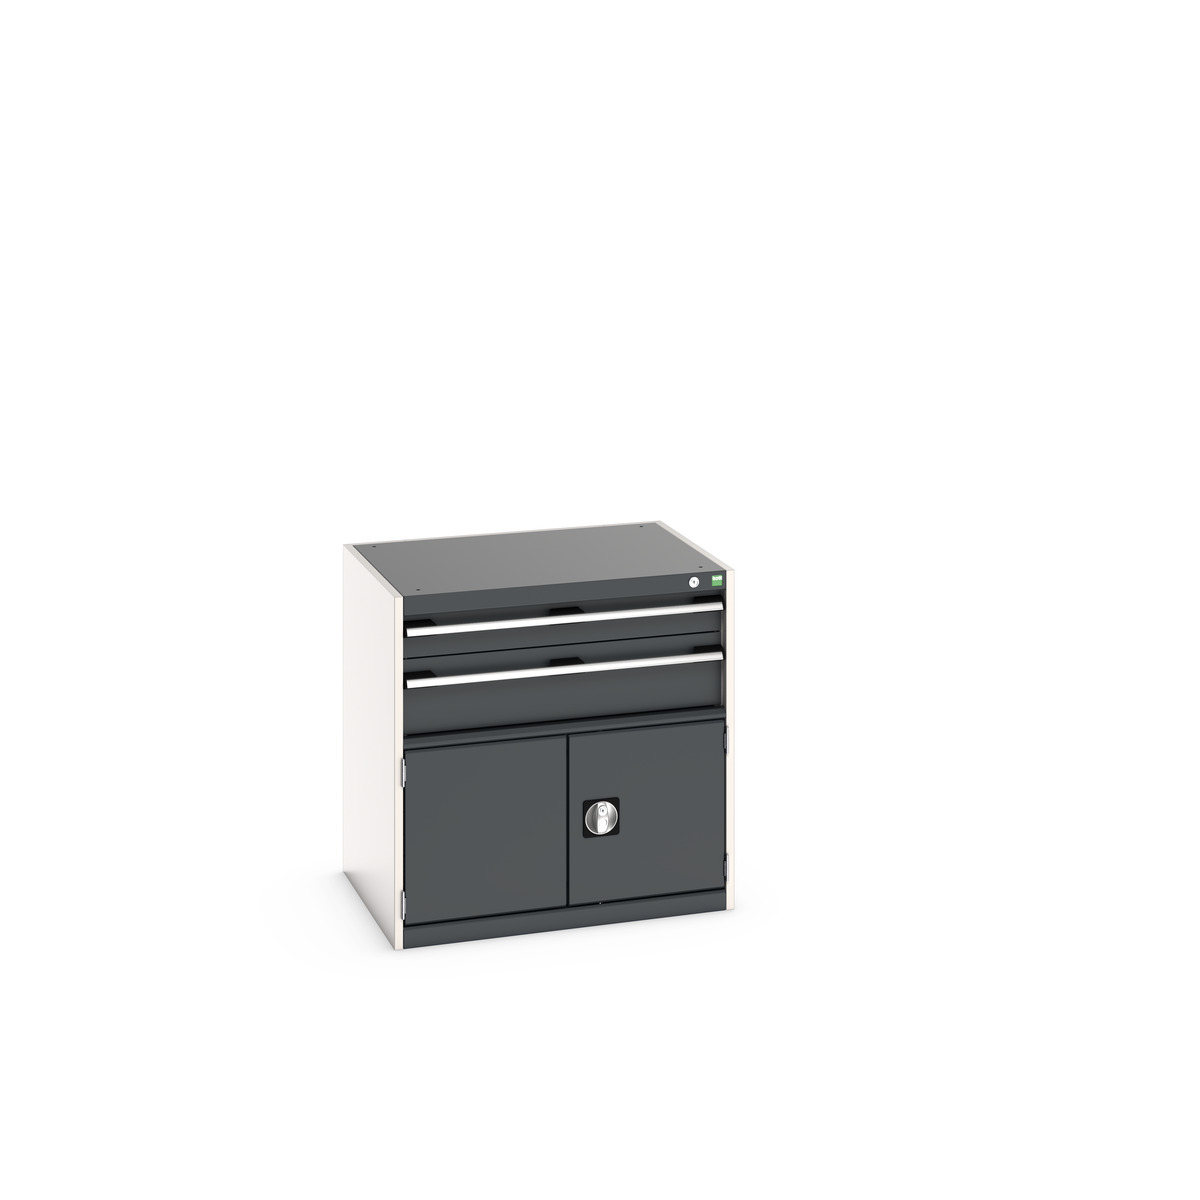 40020022. - cubio drawer-door cabinet